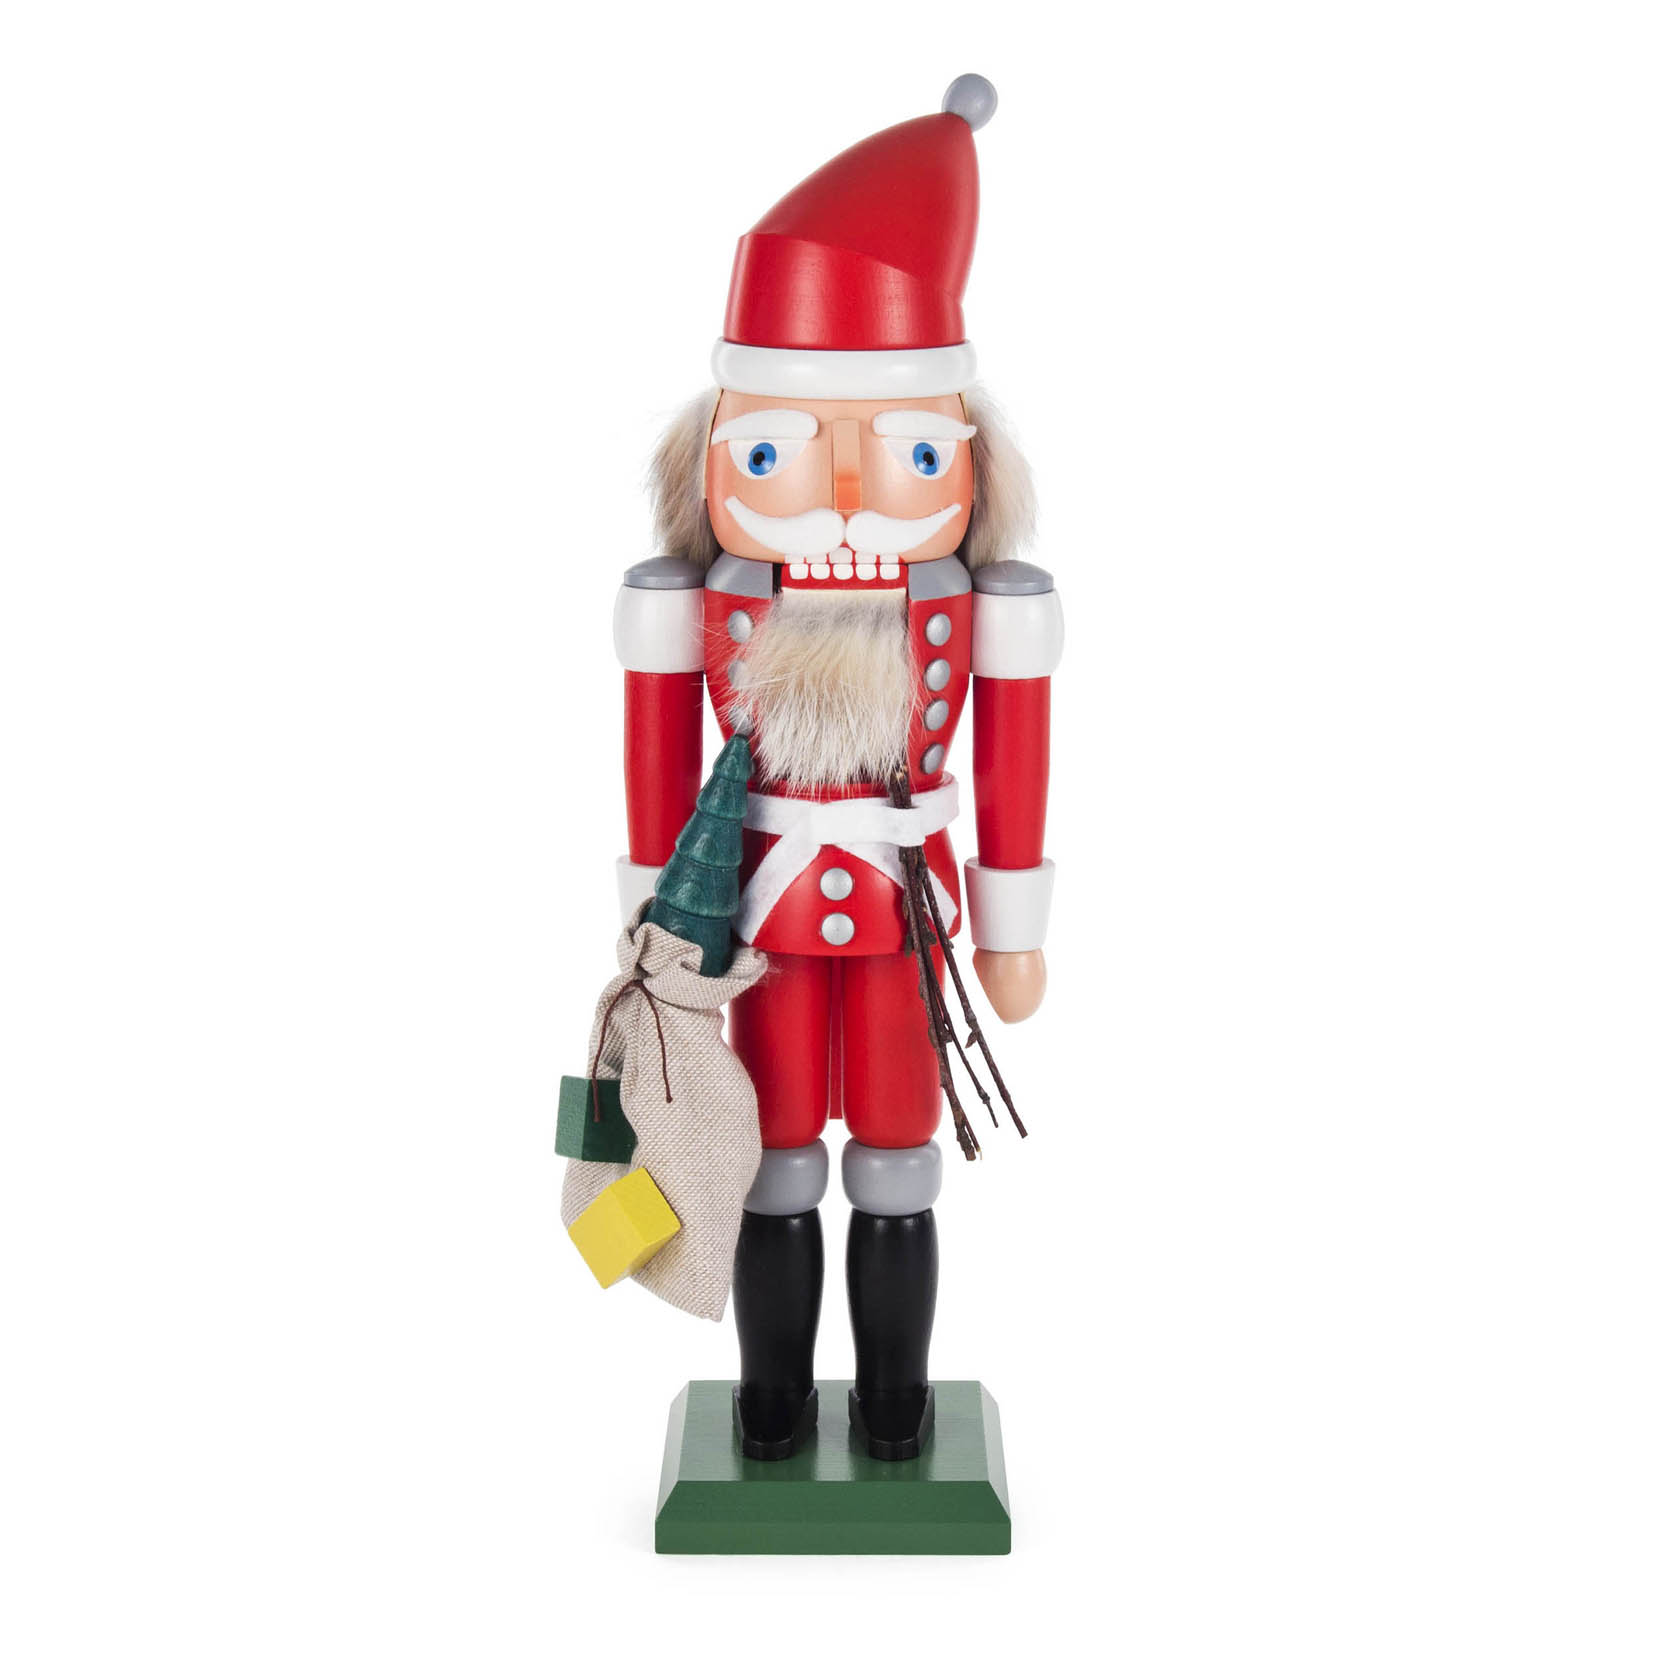 Nussknacker Weihnachtsmann rot, 32cm, mit Rute und Geschenkesack